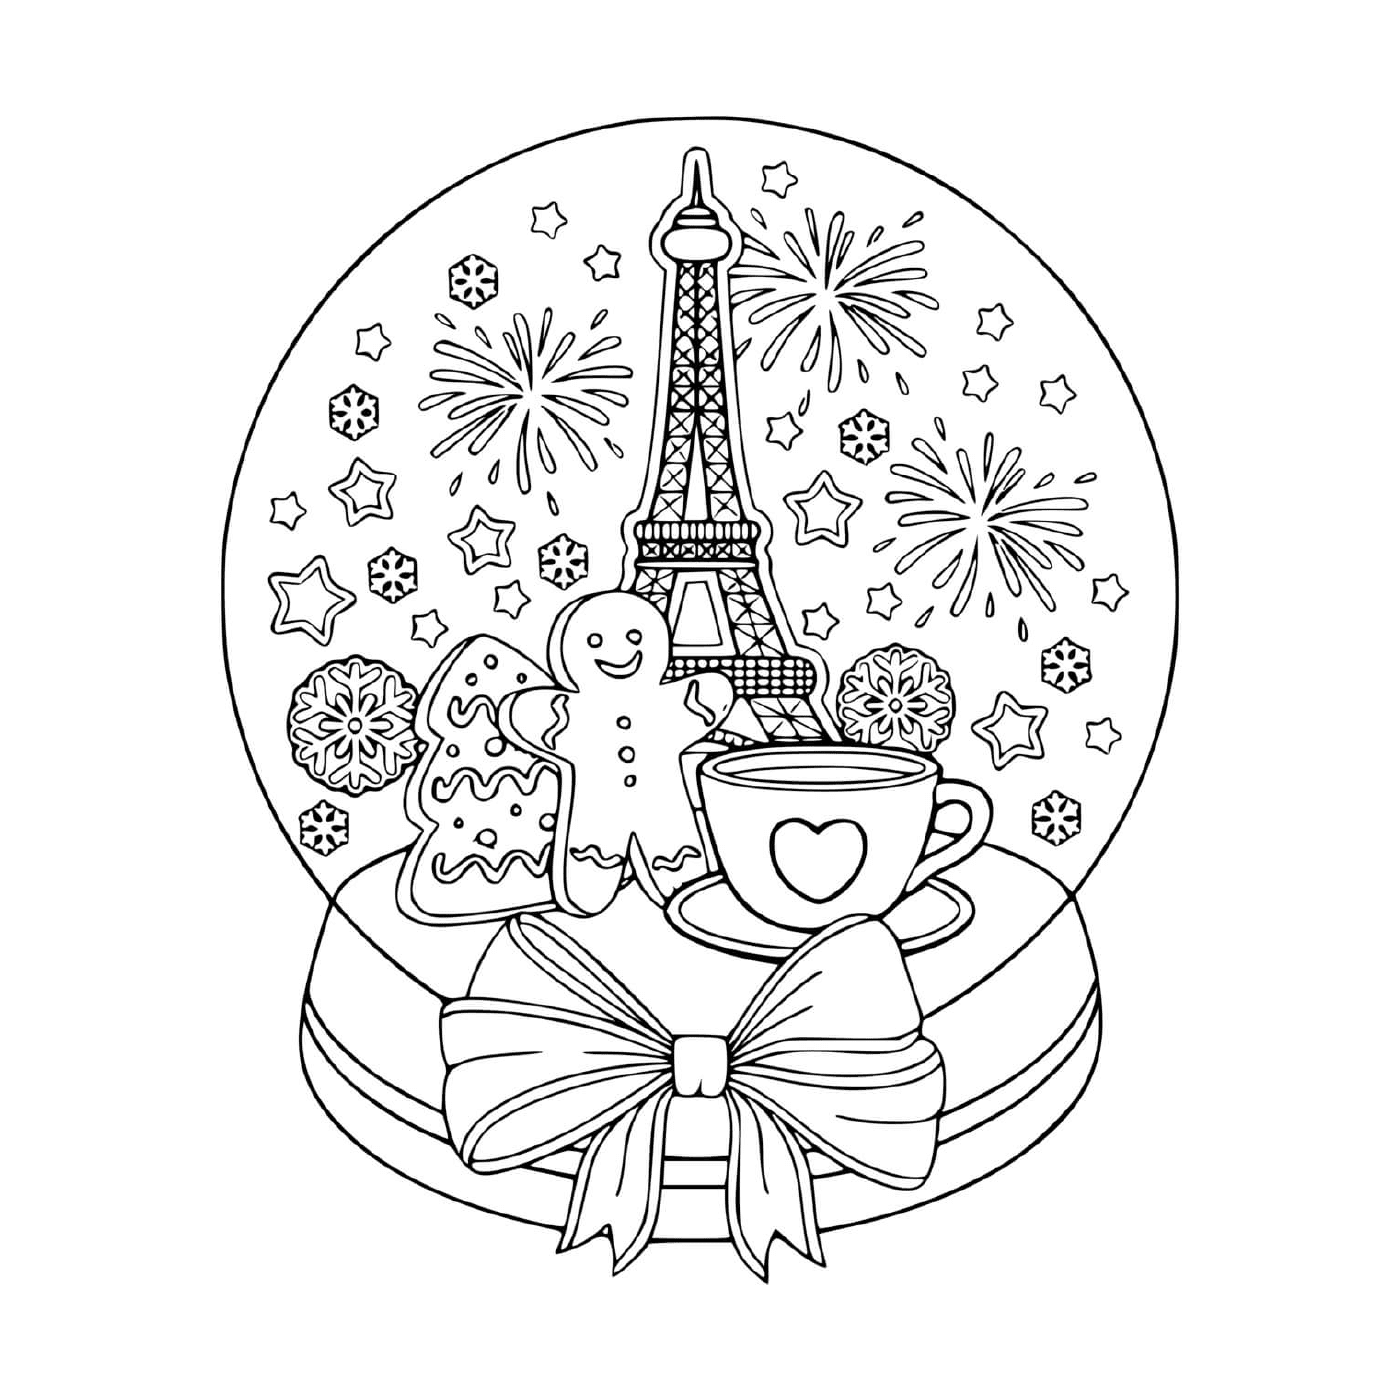  Bola de neve adulta, miniatura Paris 